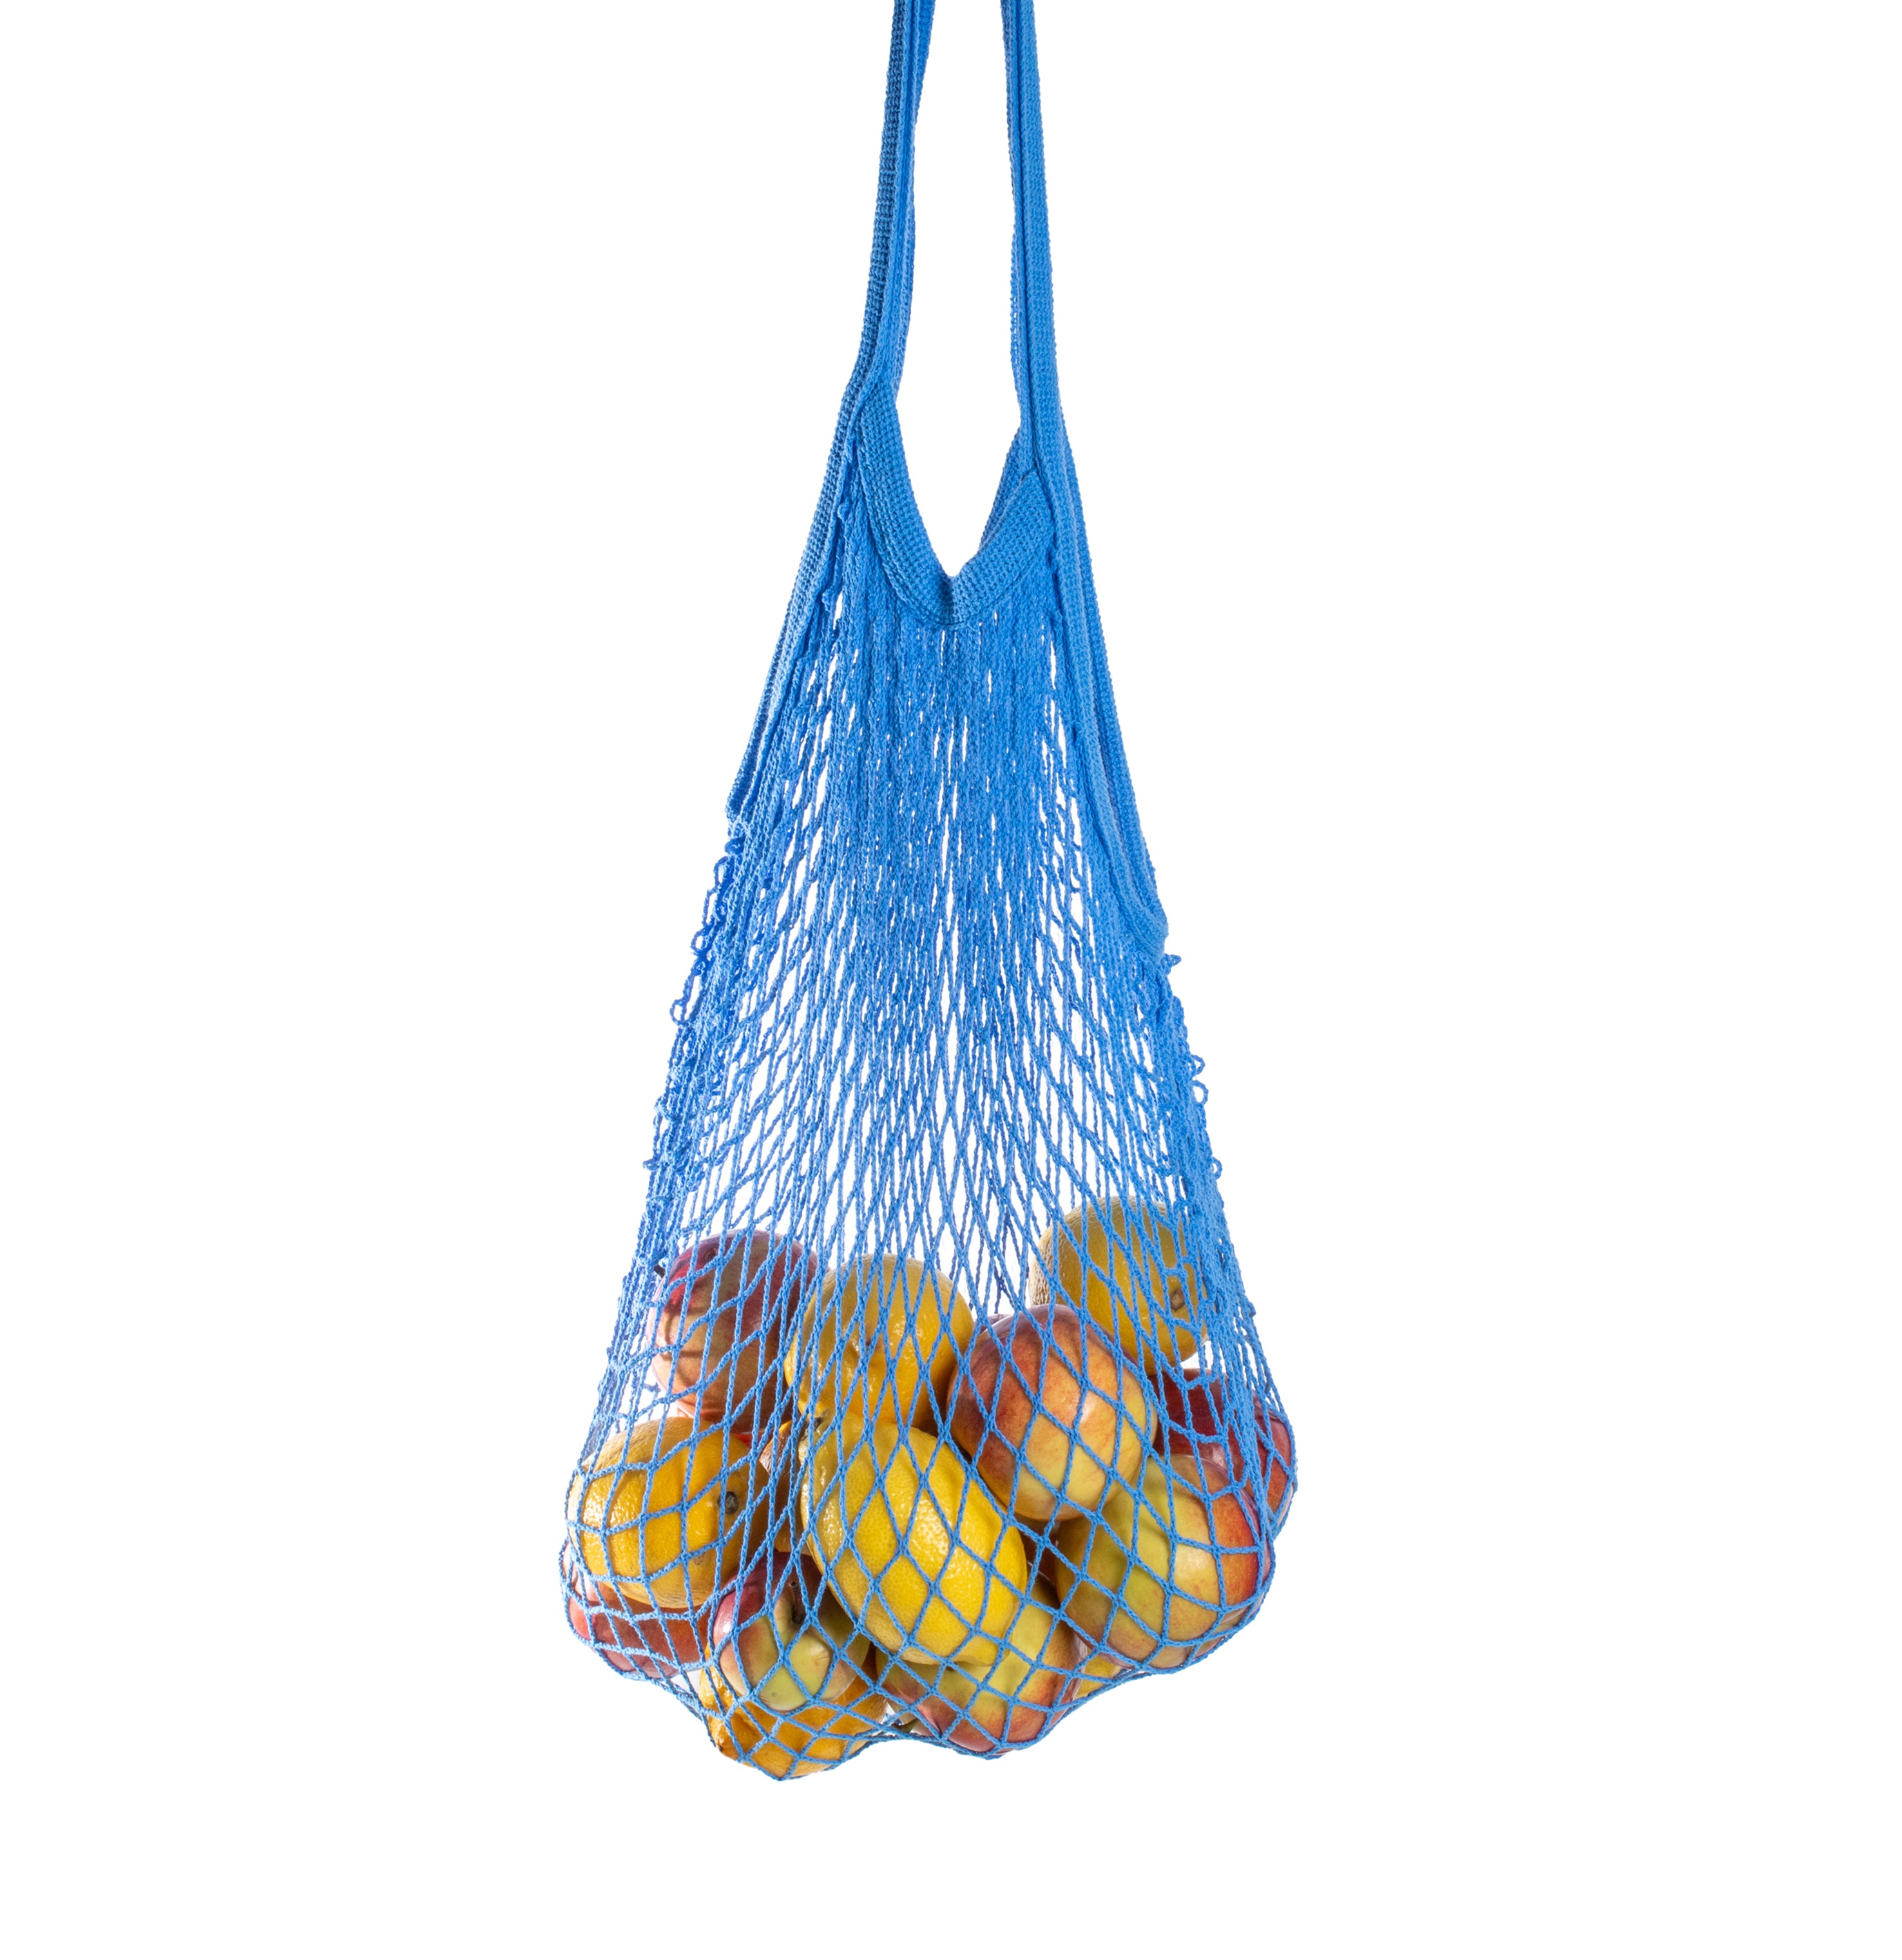 Rezginė sietka pirkinių krepšys mėlynos spalvos, su vaisiais viduje, dovanų idėjos, mados aksesuarai moterims